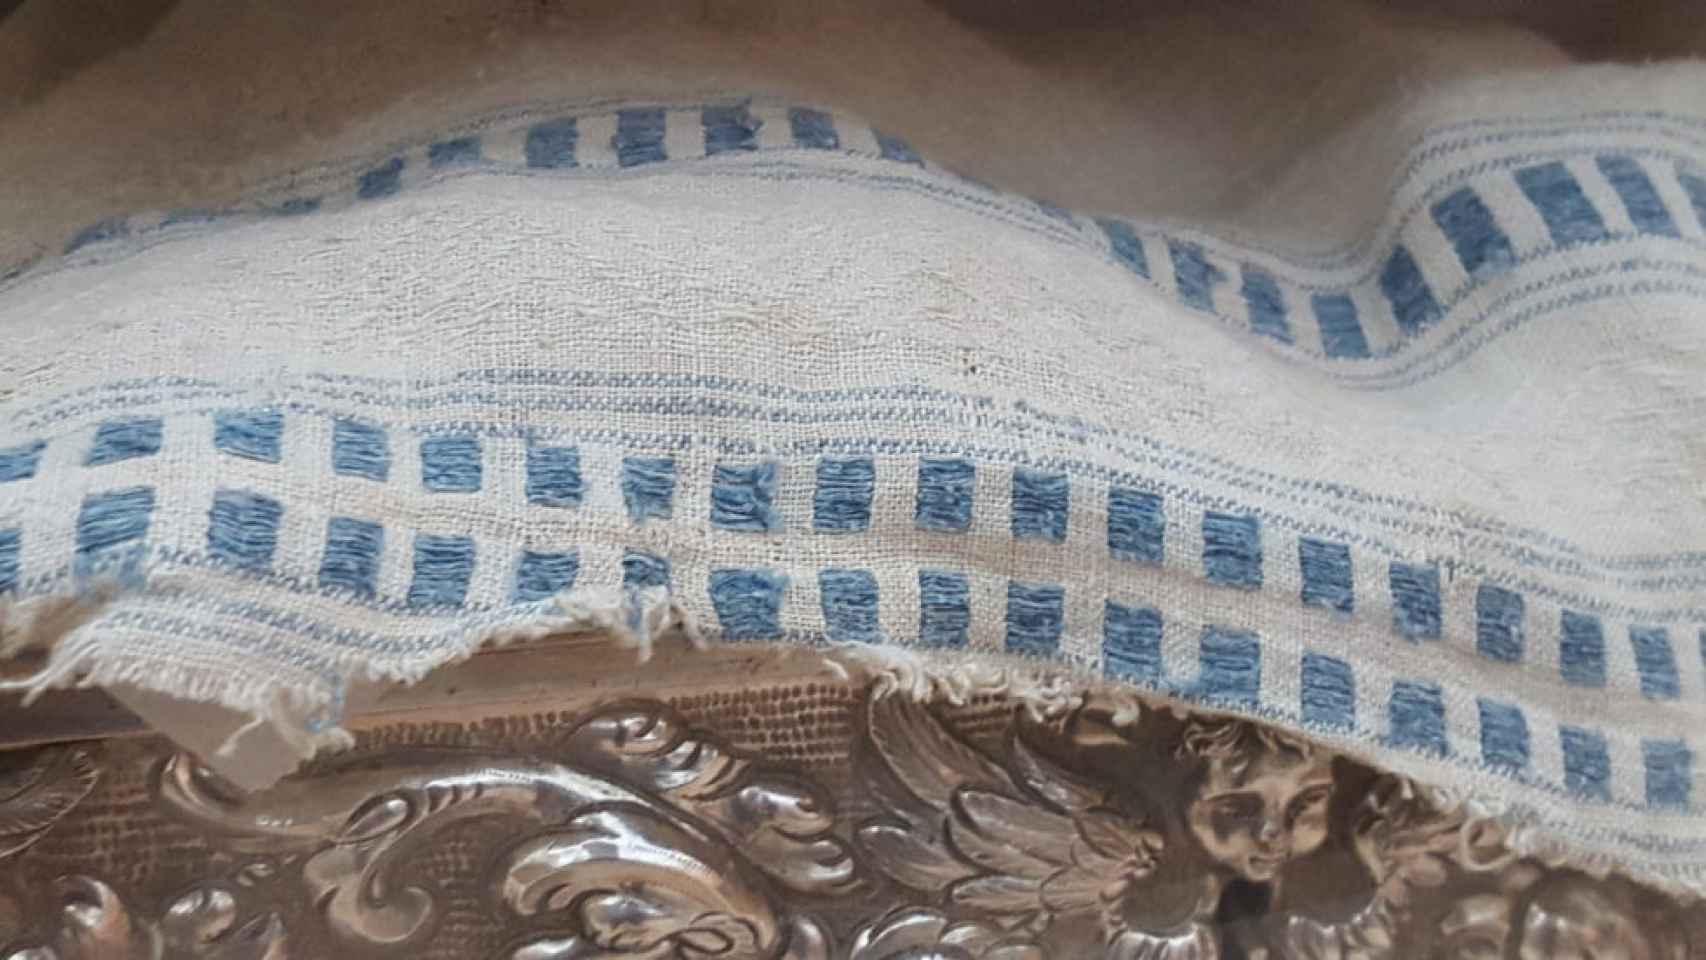 Detalle del borde del mantel de lino, teñido con índigo natural.